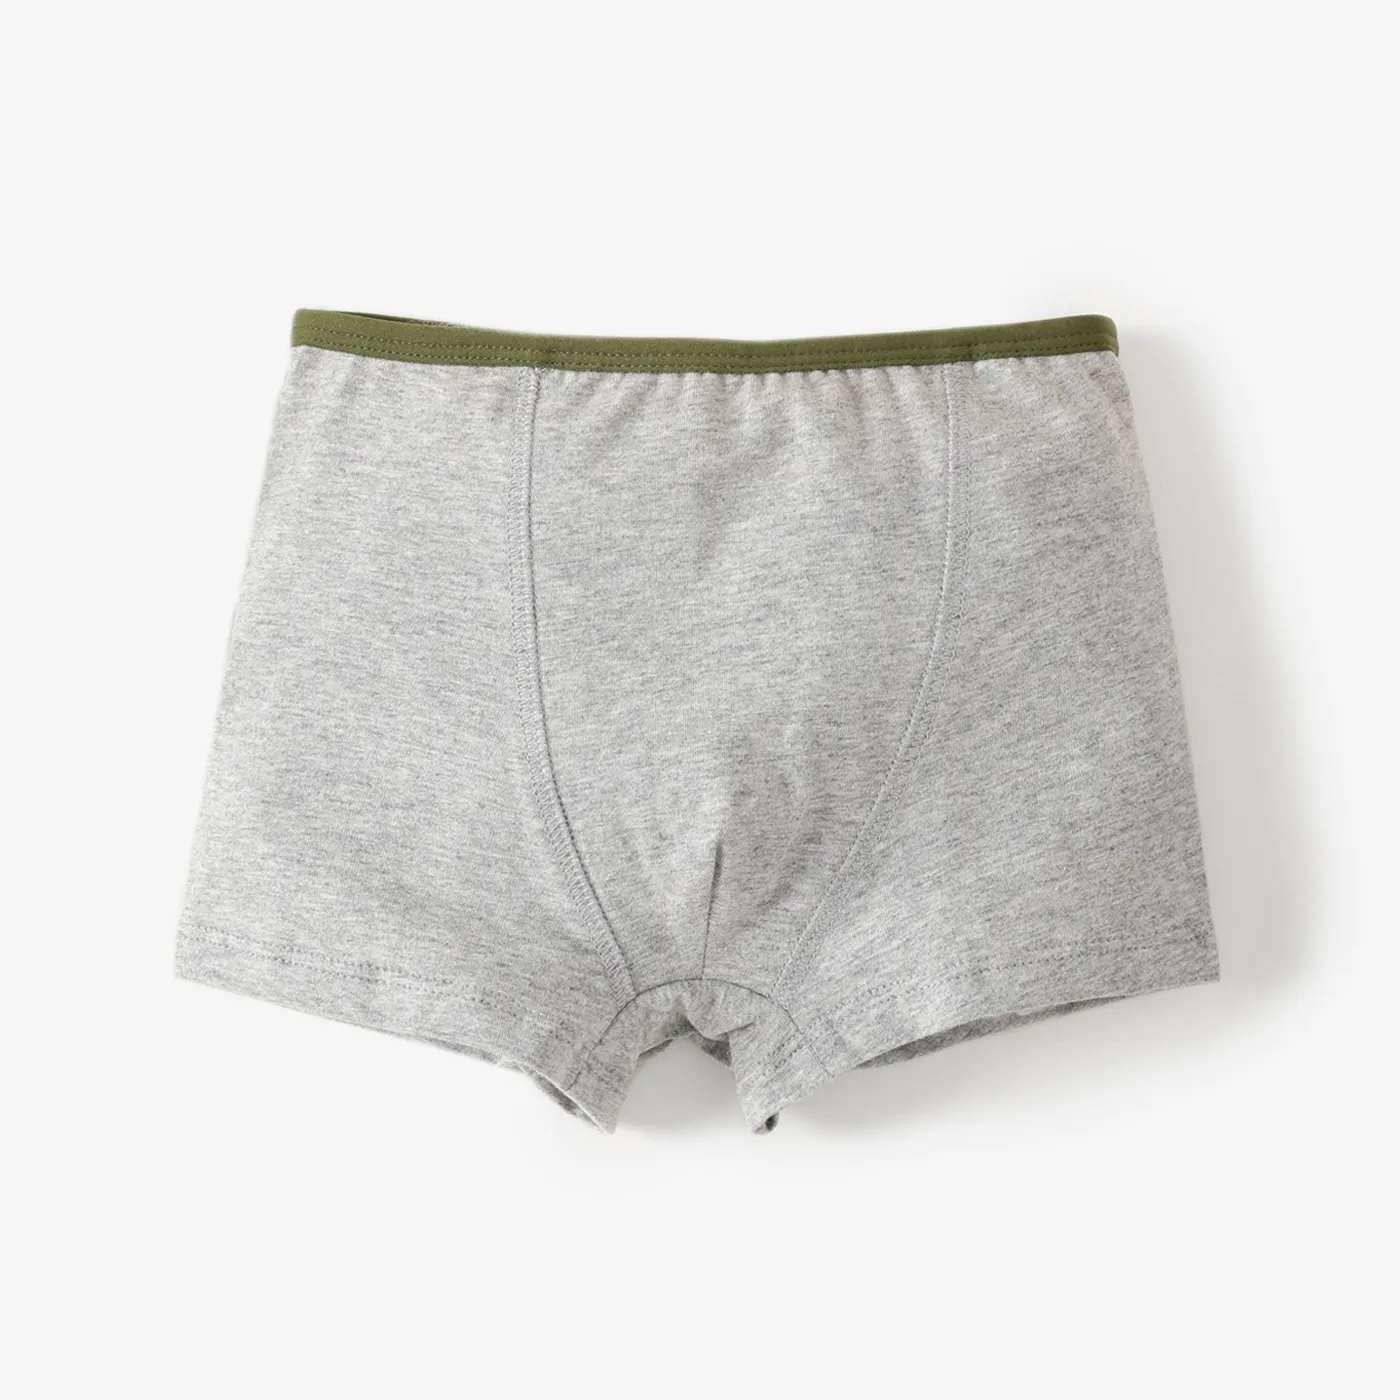 Boys' Stylish Cotton Boxer Briefs Underwear